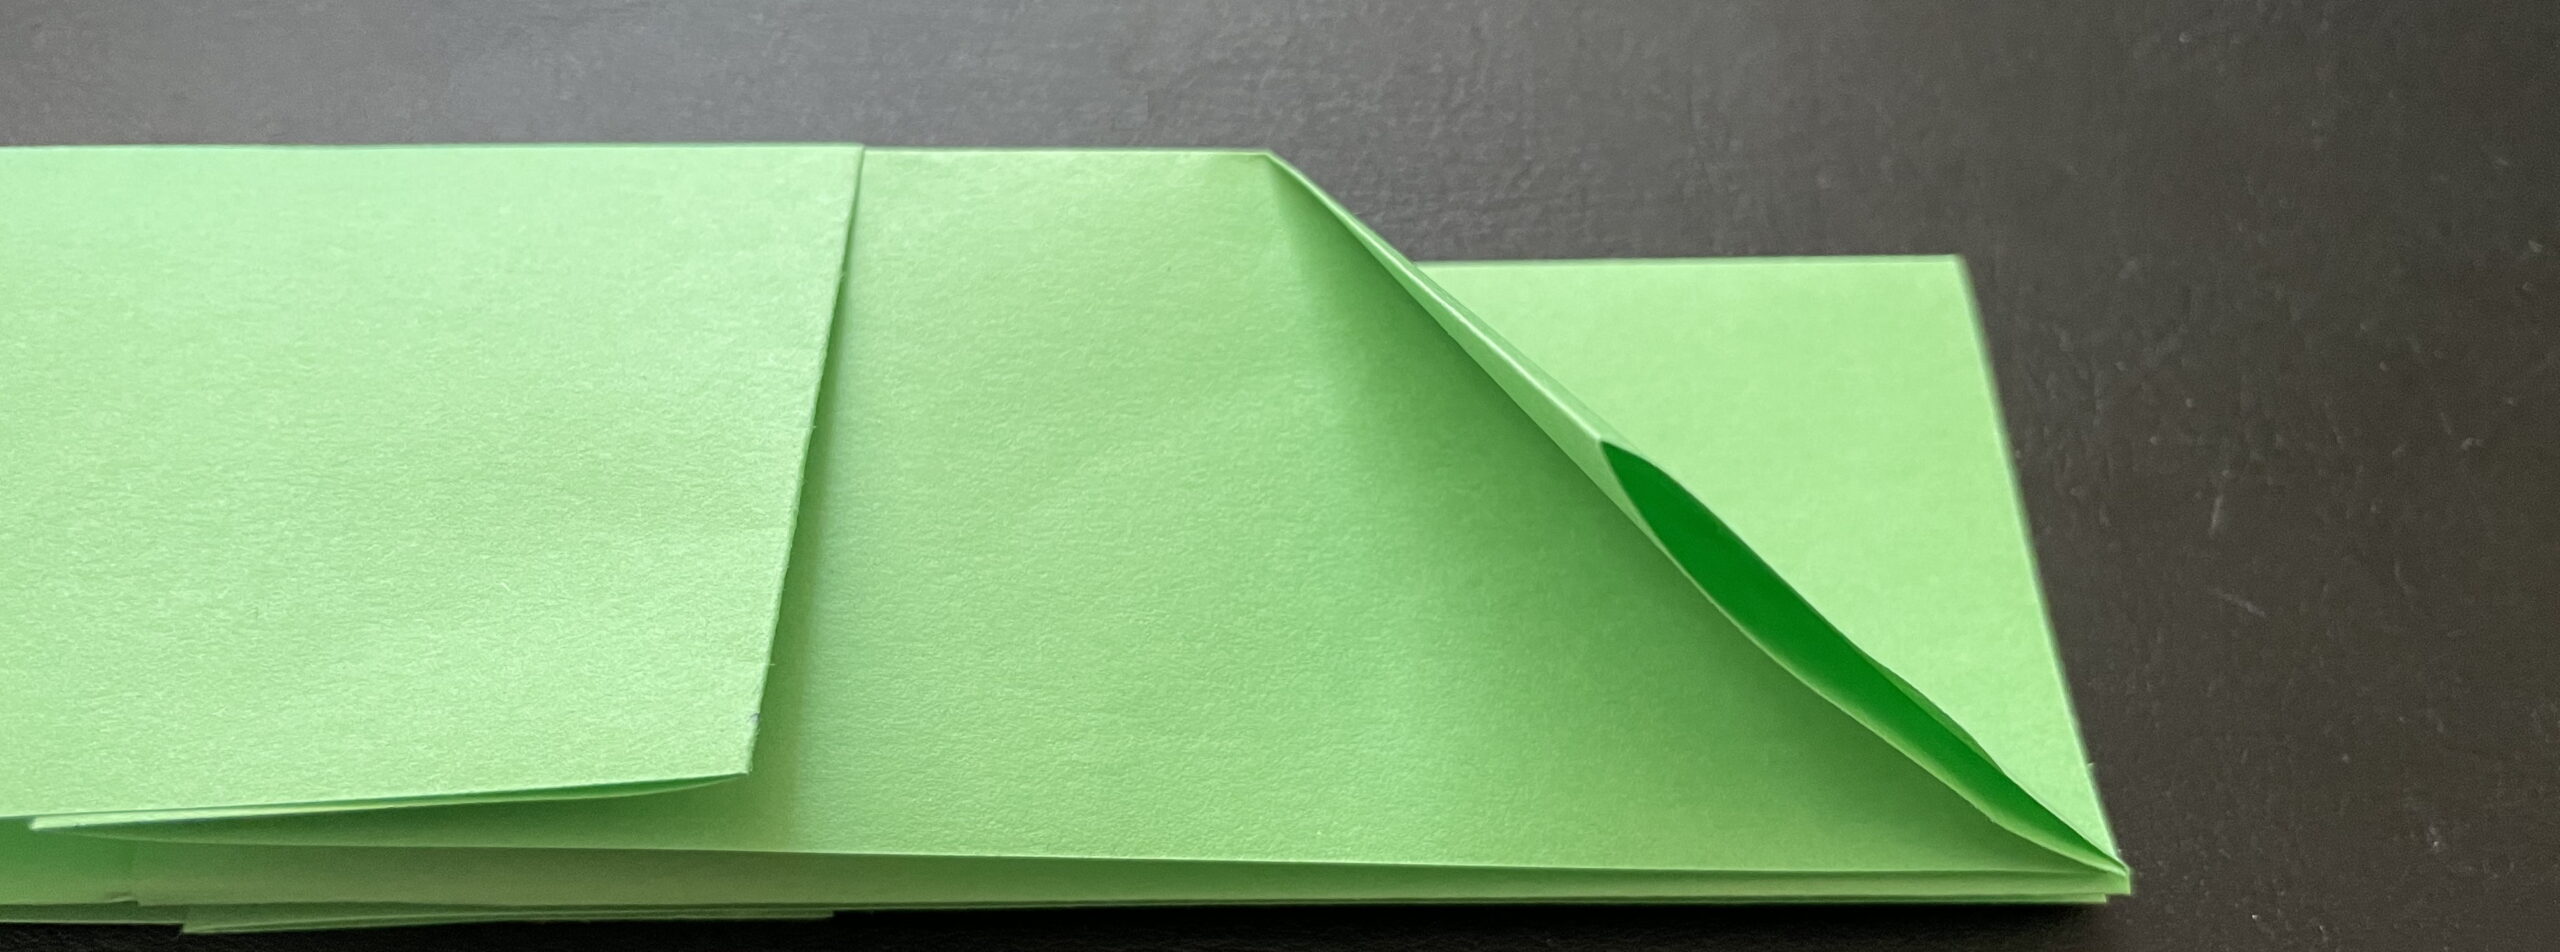 Оригами носорог бумага А4